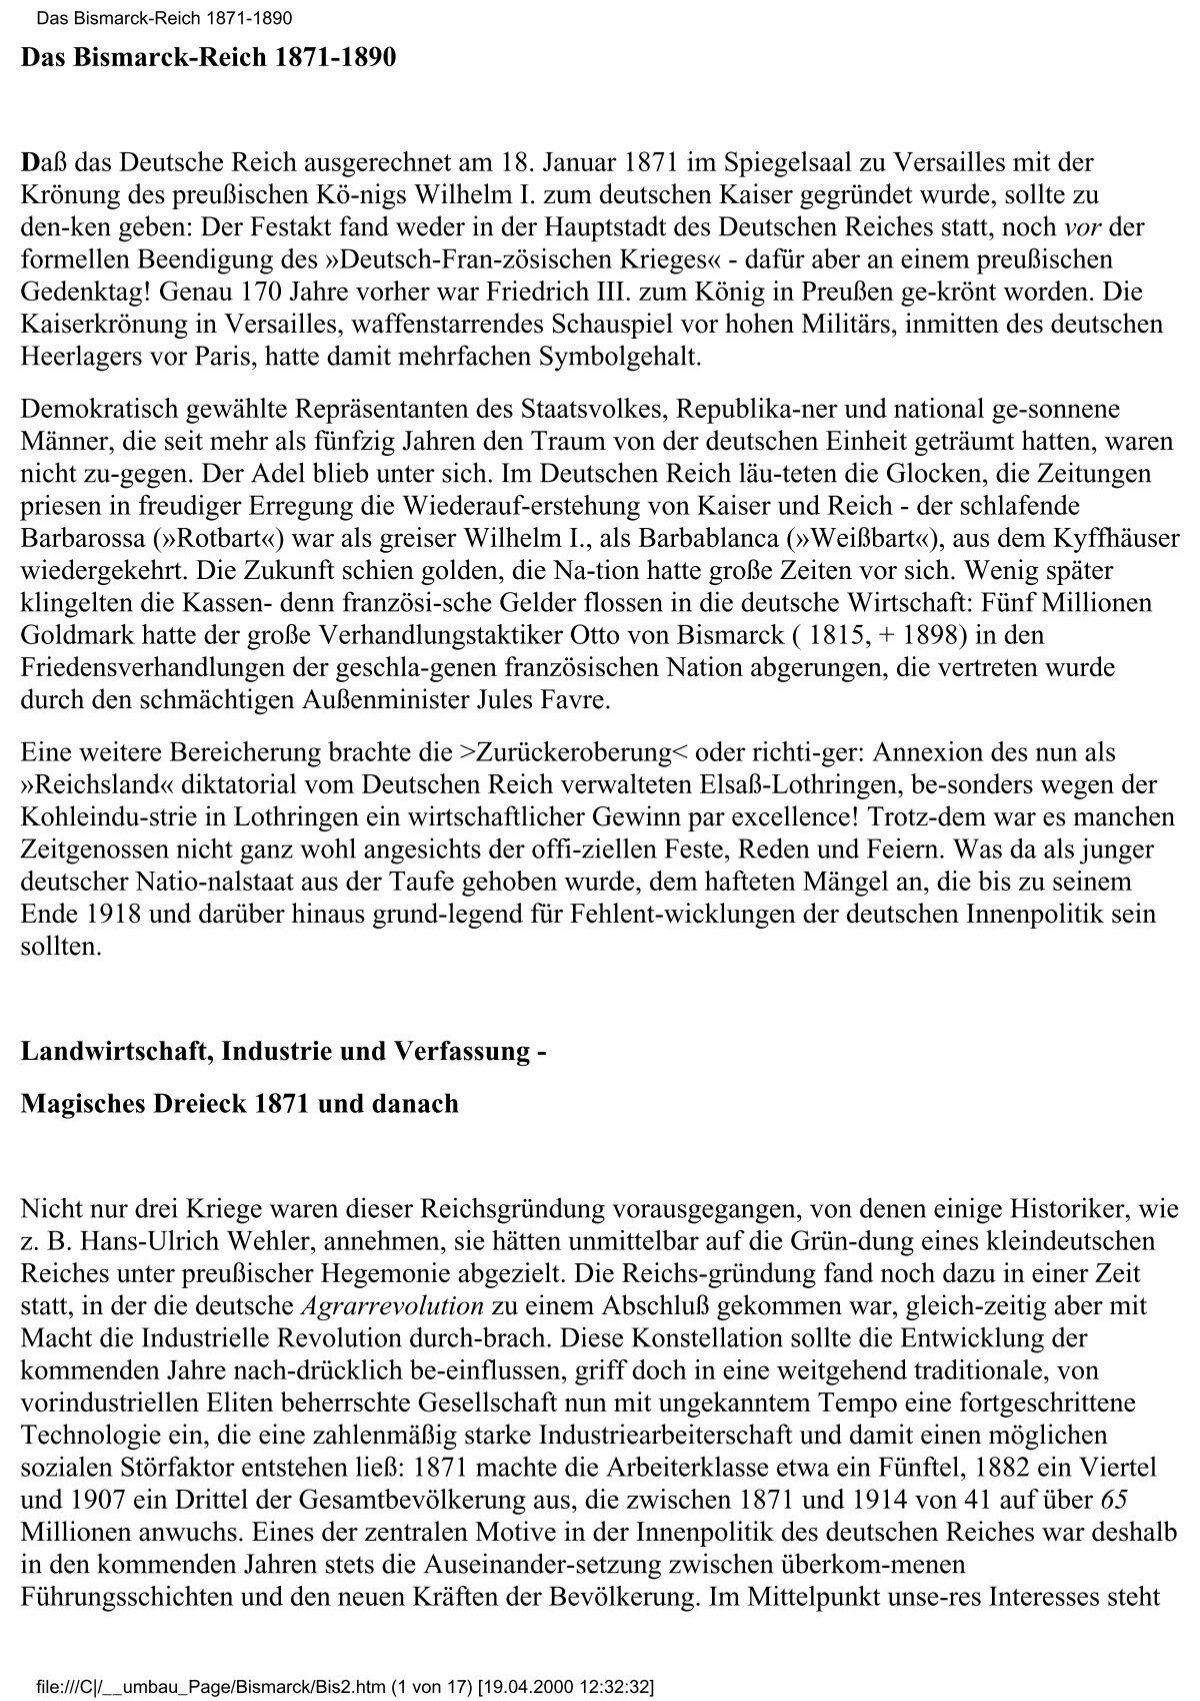 verfassung des deutschen reichs 1871 pdf